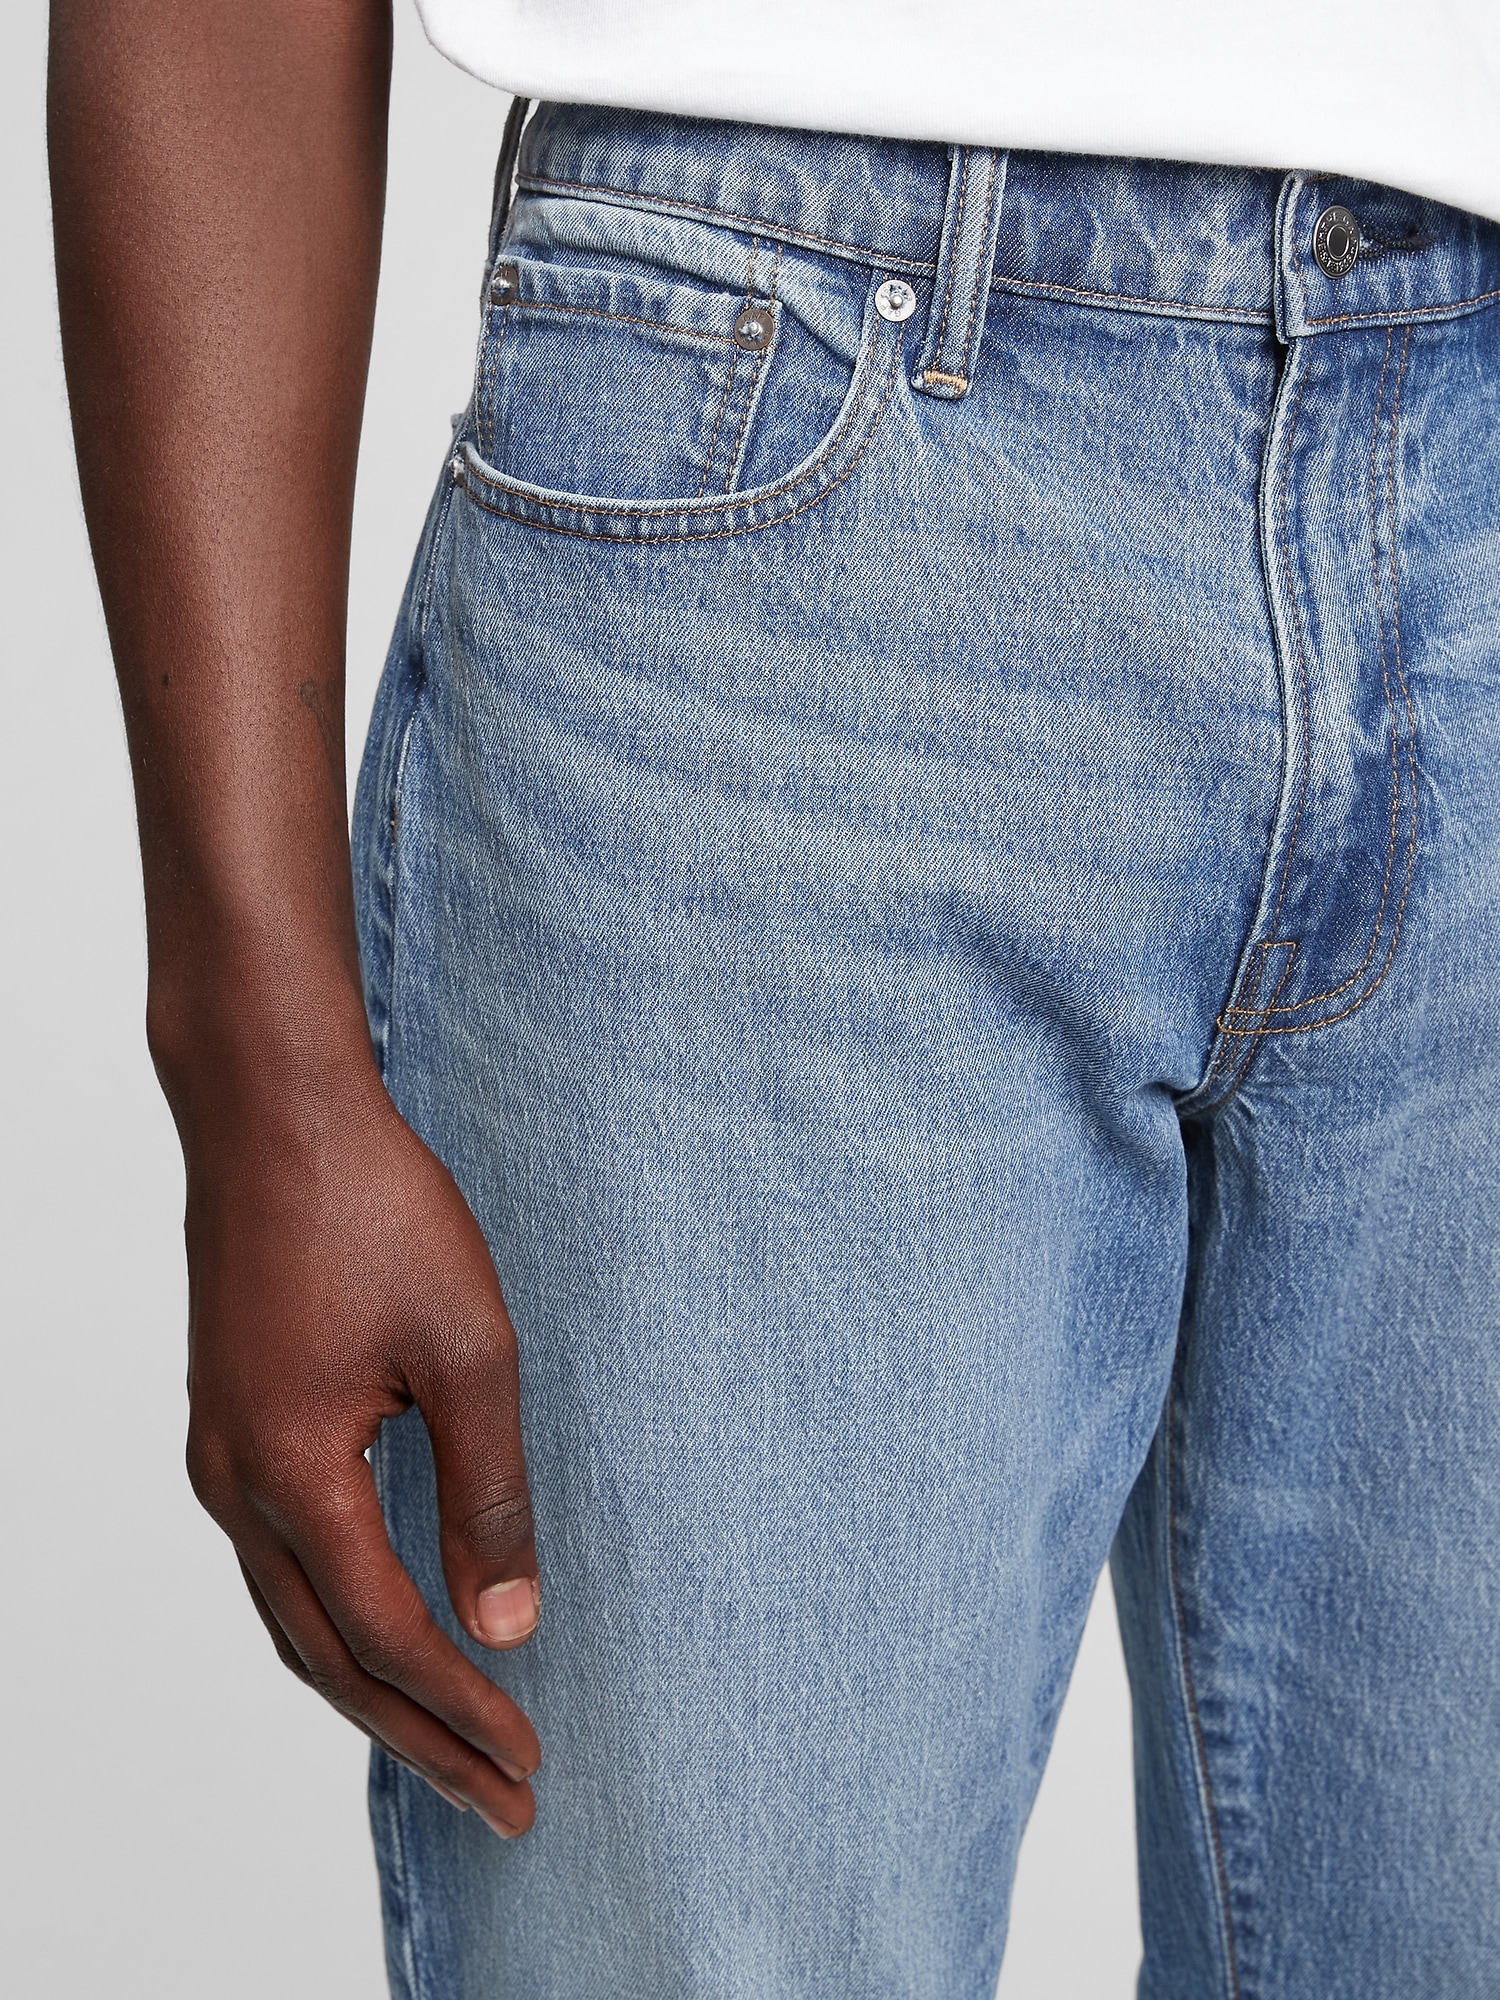 Gap Mens Everyday Slim Jeans GapFlex Stretch Denim Resin Rinse Size 34/34